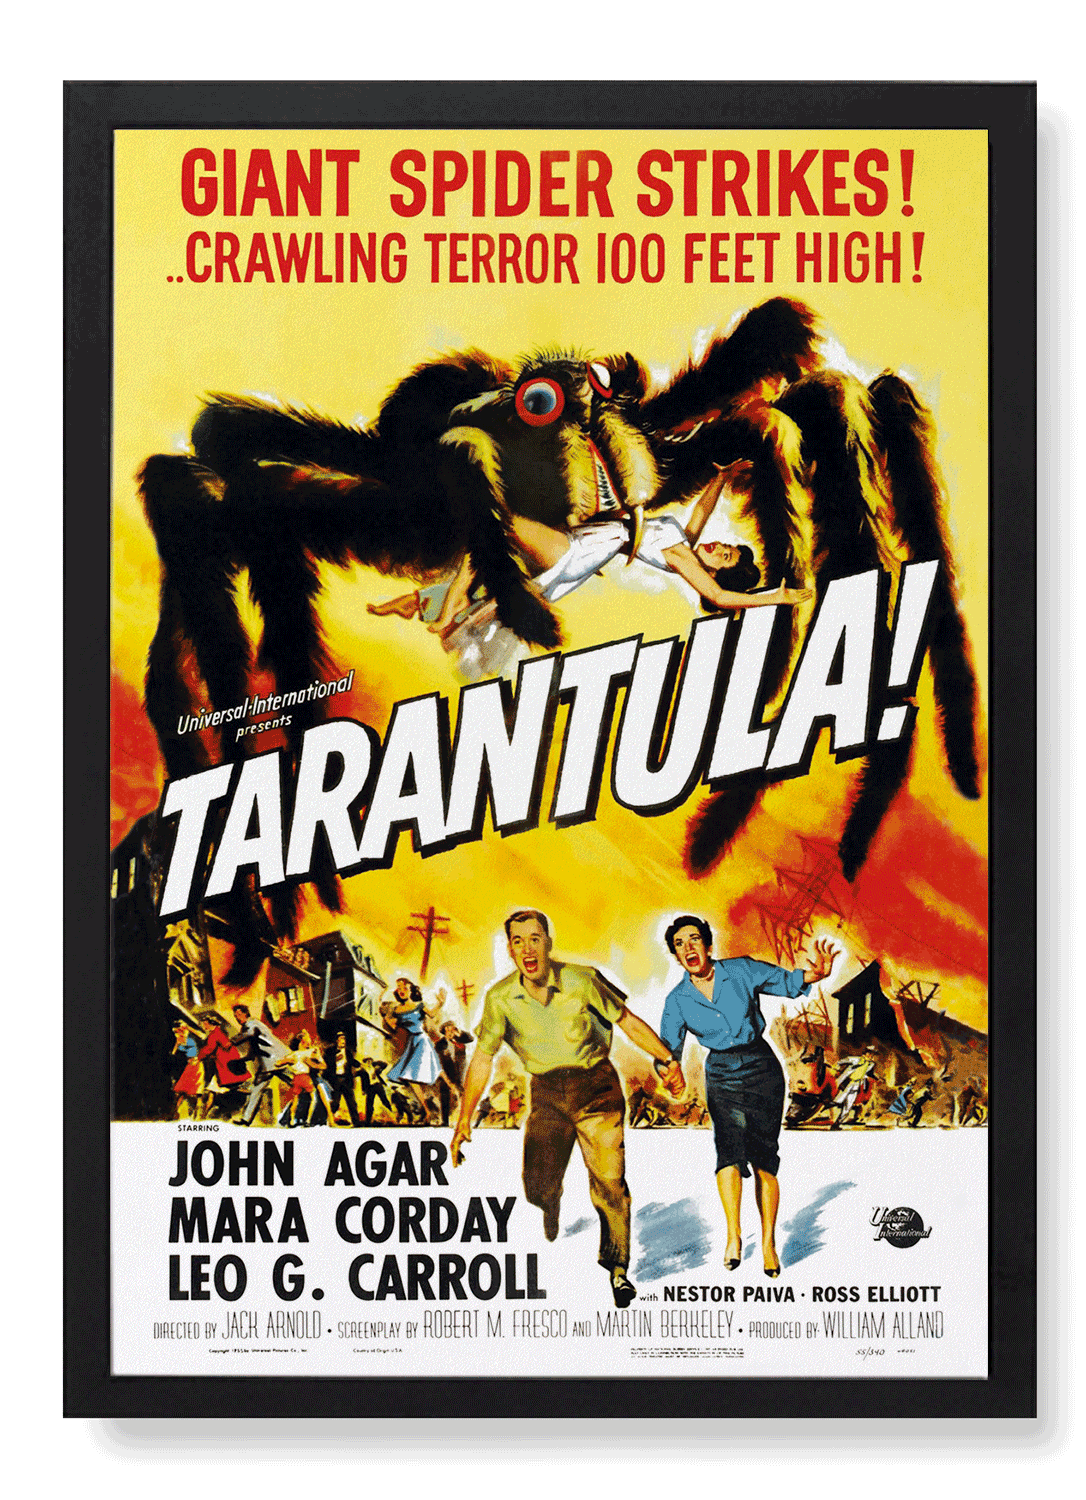 TARANTULA! (1955)